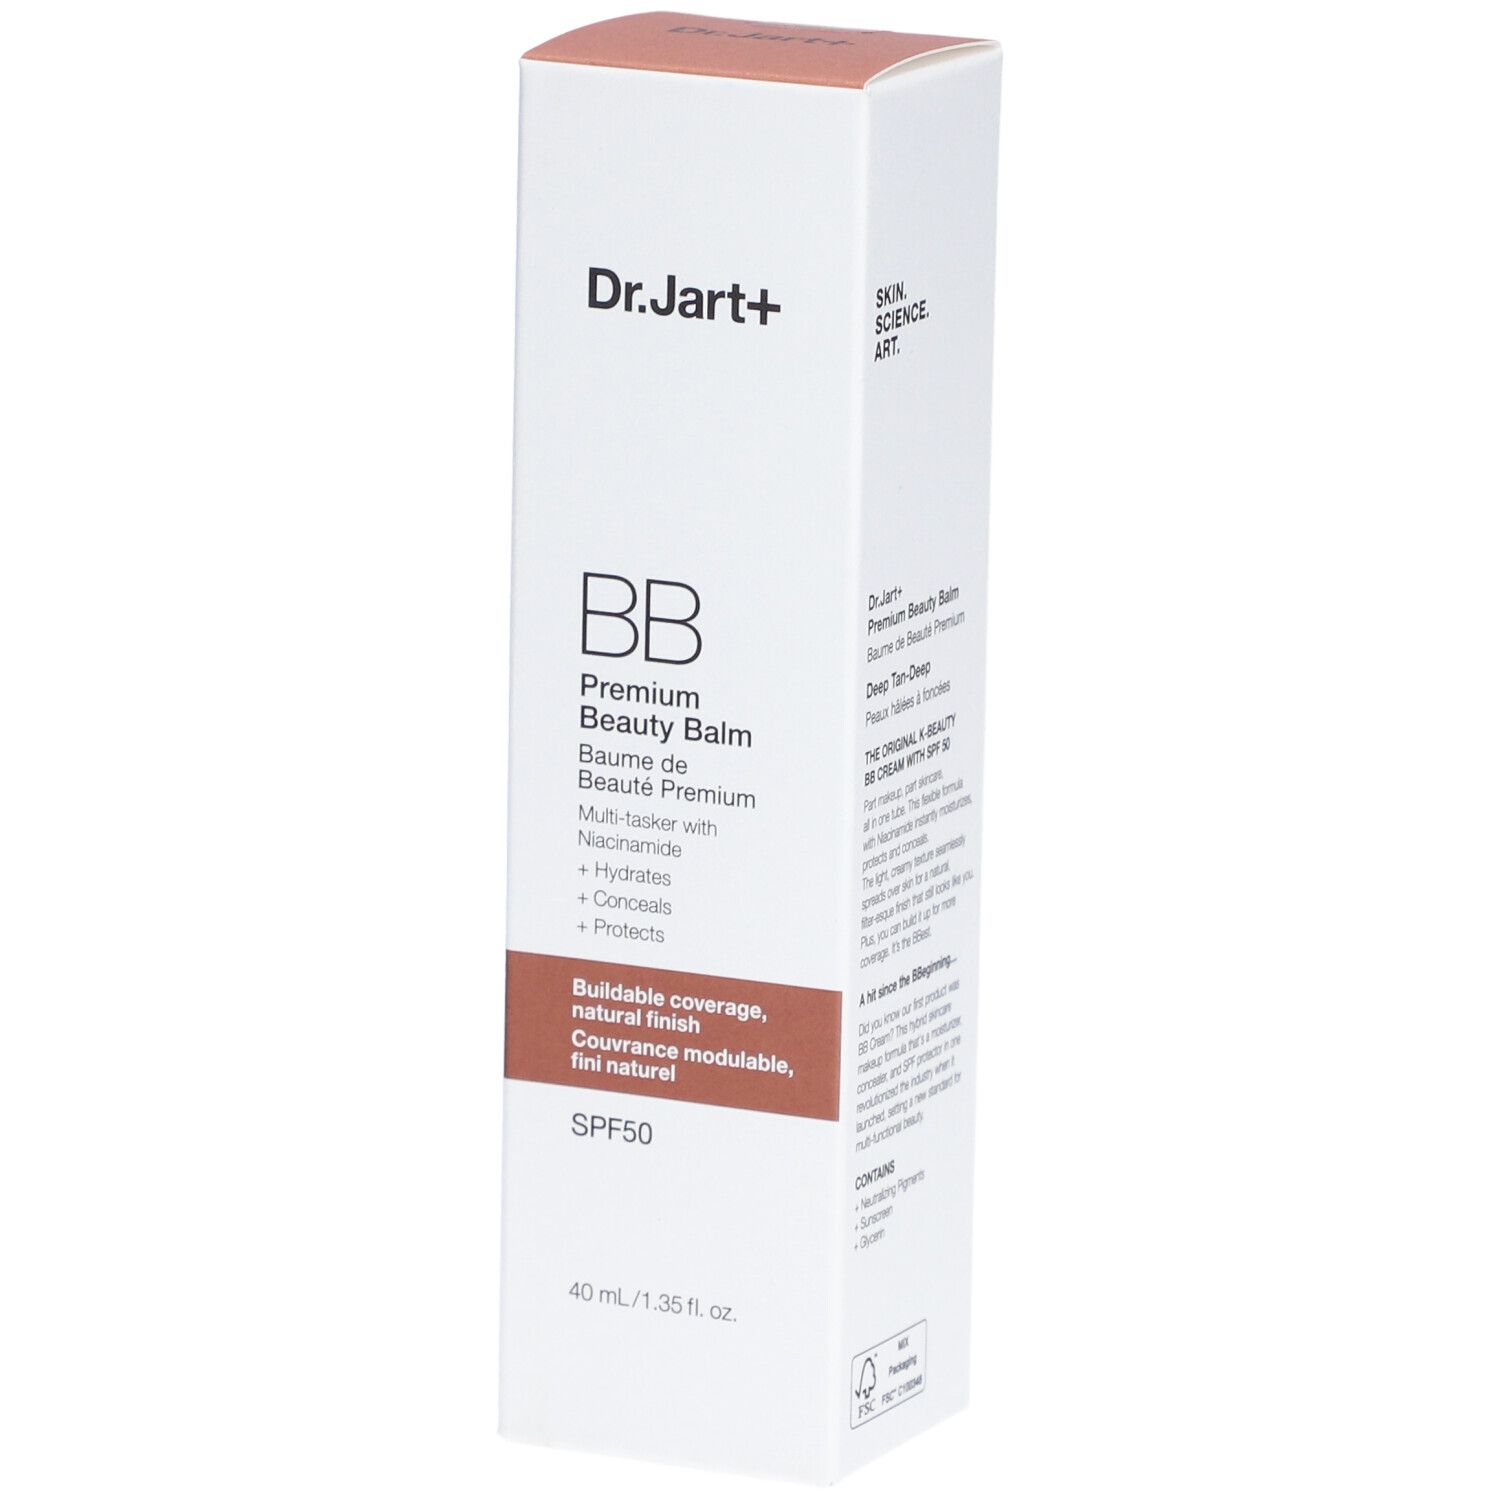 Dr.Jart+ Premium Beauty Balm - BB Cream 04 Deep Tan-Deep